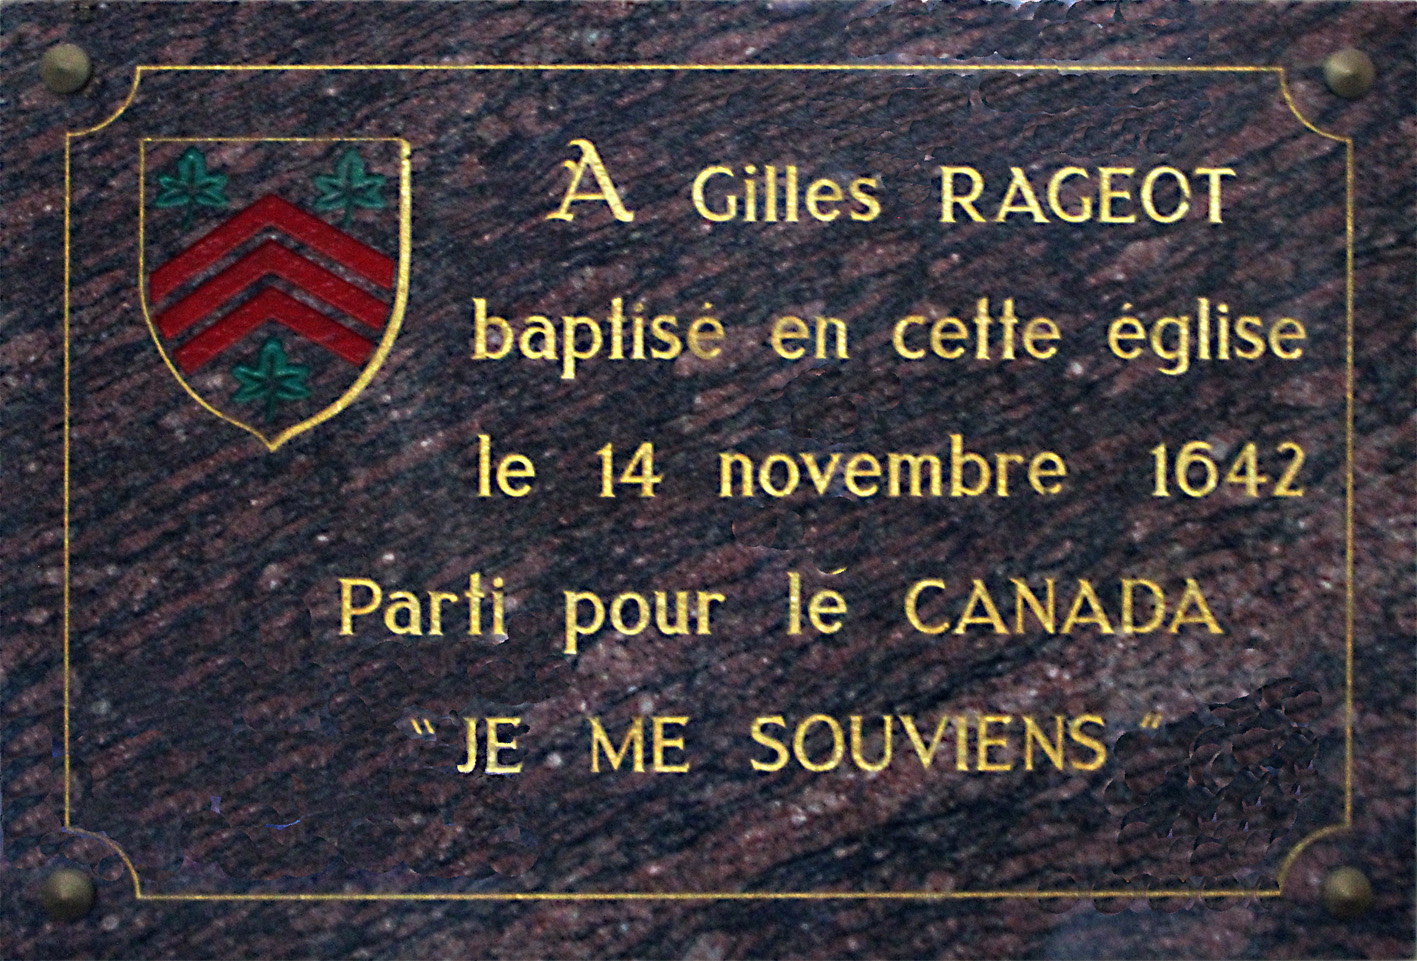 Commemorative plaque in L'Aigle